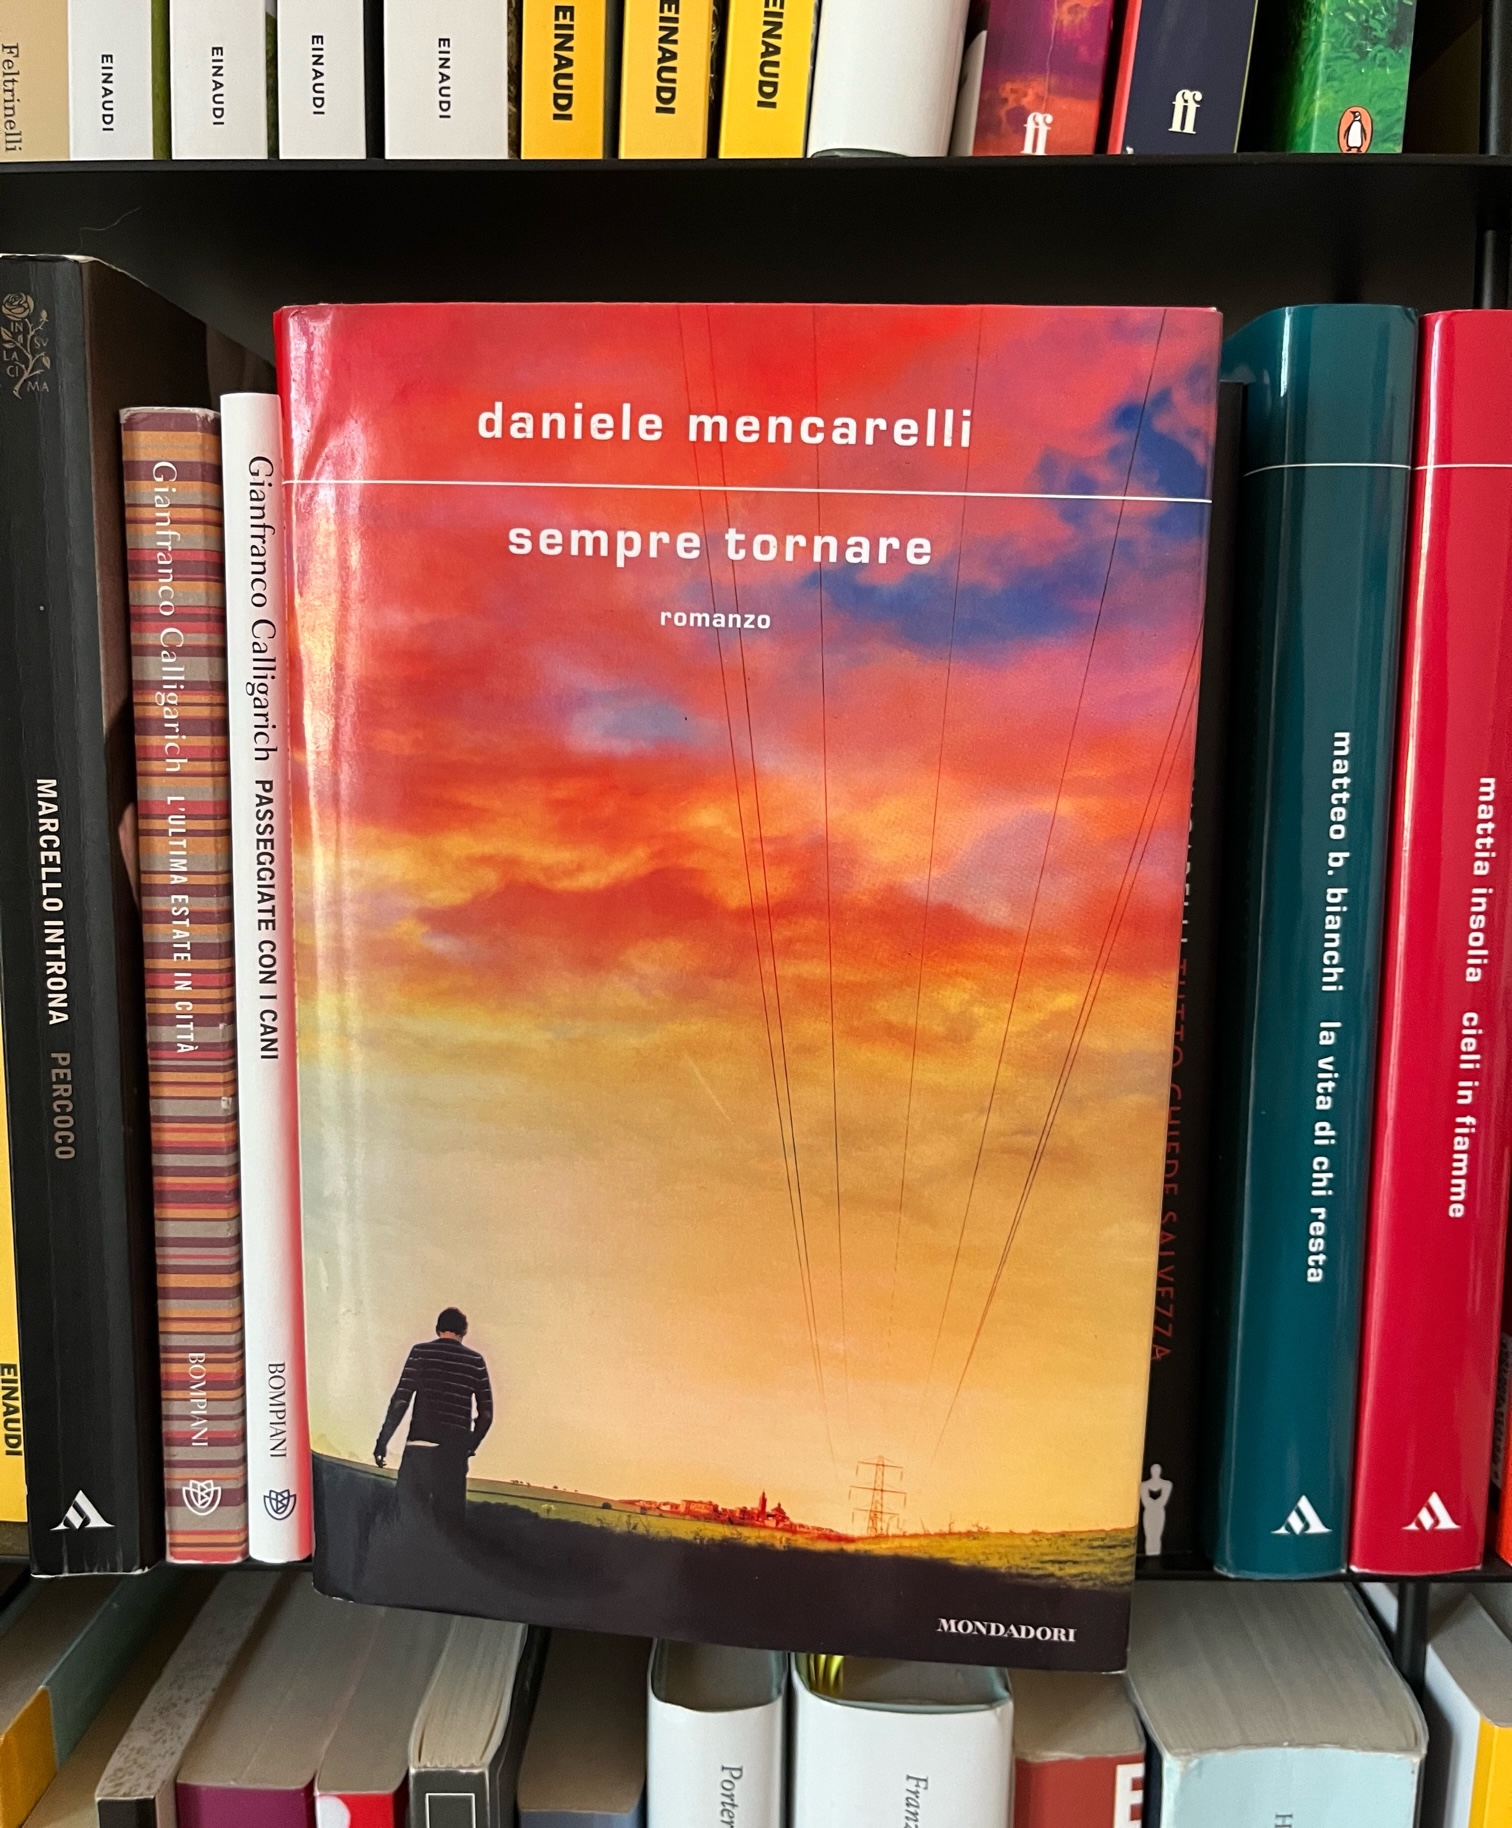 Copertina del romanzo di Daniele Mencarelli "Sempre tornare". Un uomo cammina su una strada alal luce del tramonto.